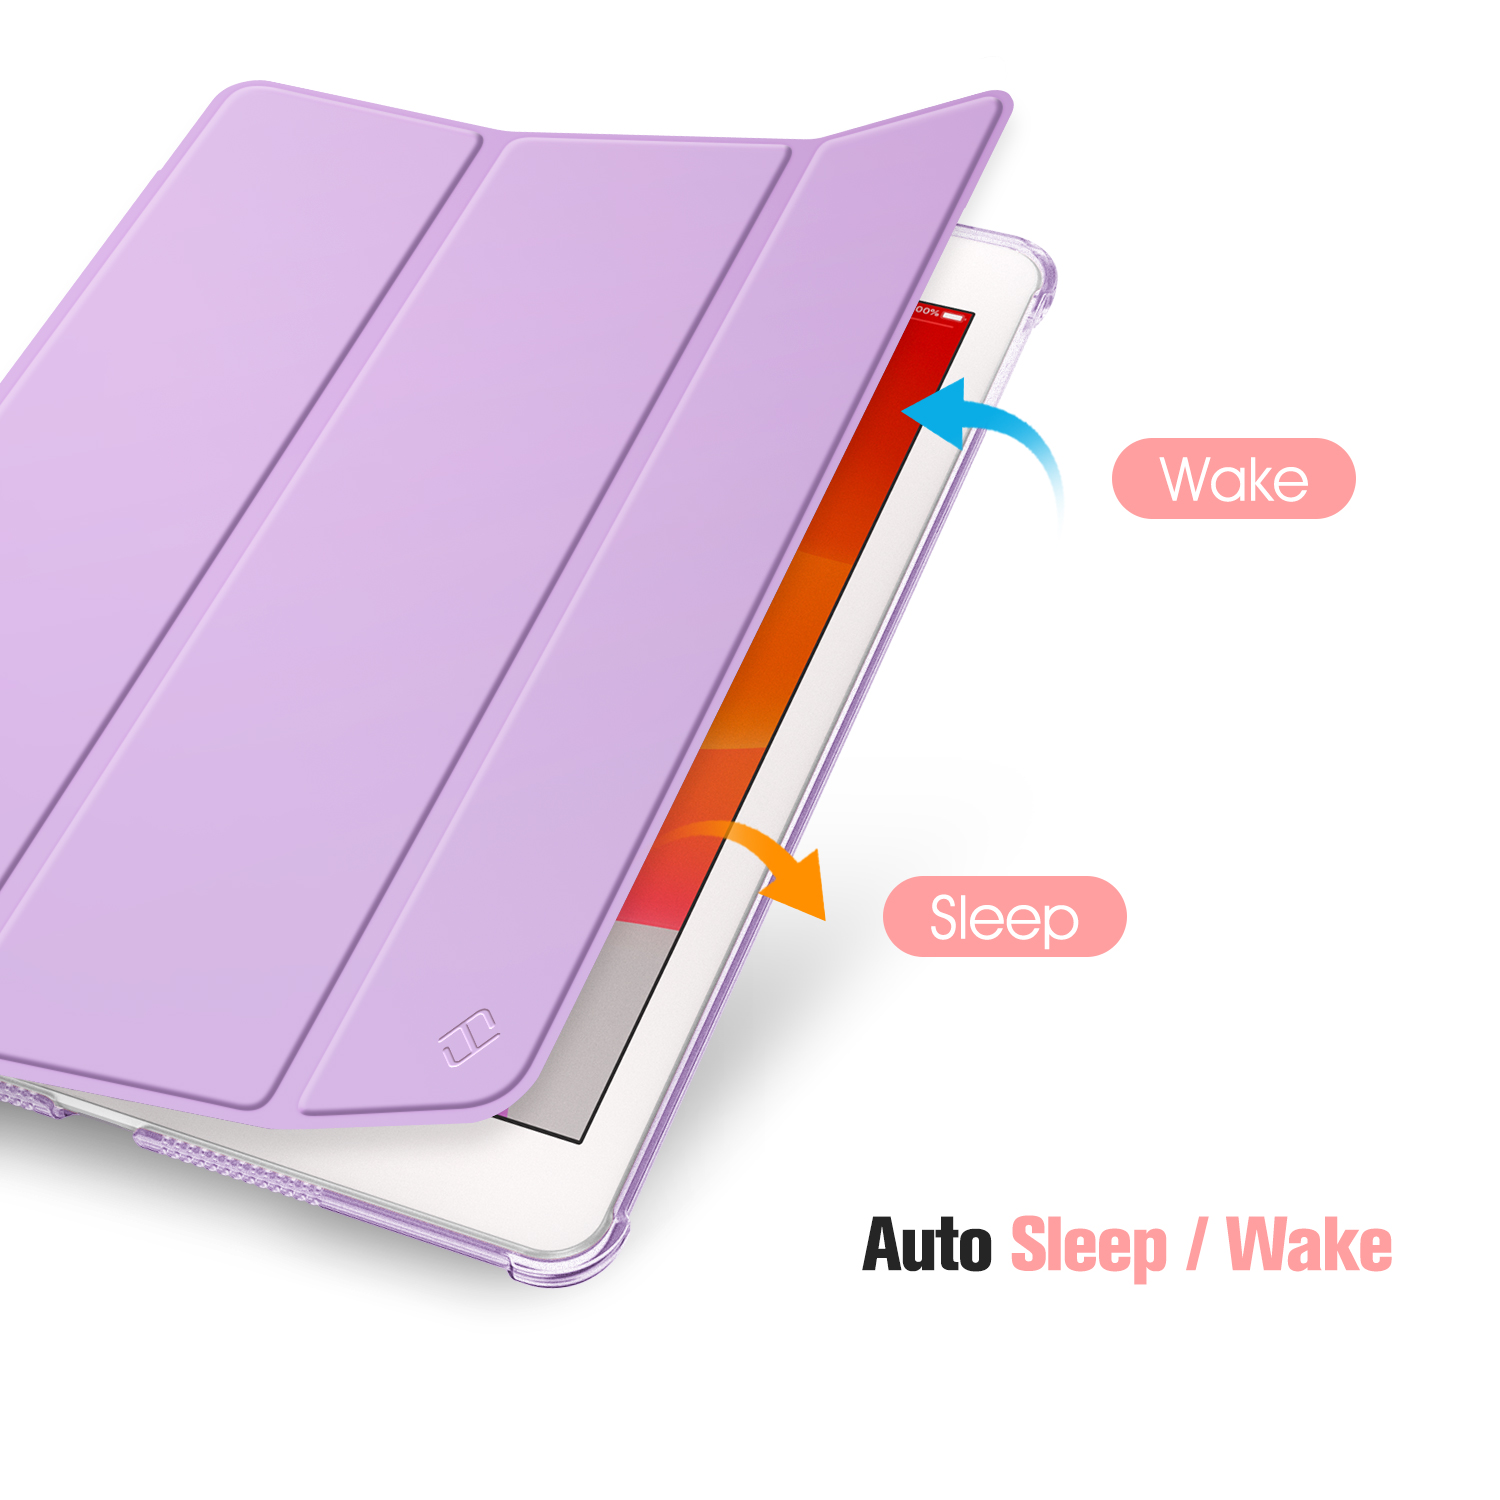 FINTIE Hülle Tablethülle Bookcover für Kunstleder, Kunststoff, Polykarbonat, iPad Lavendel